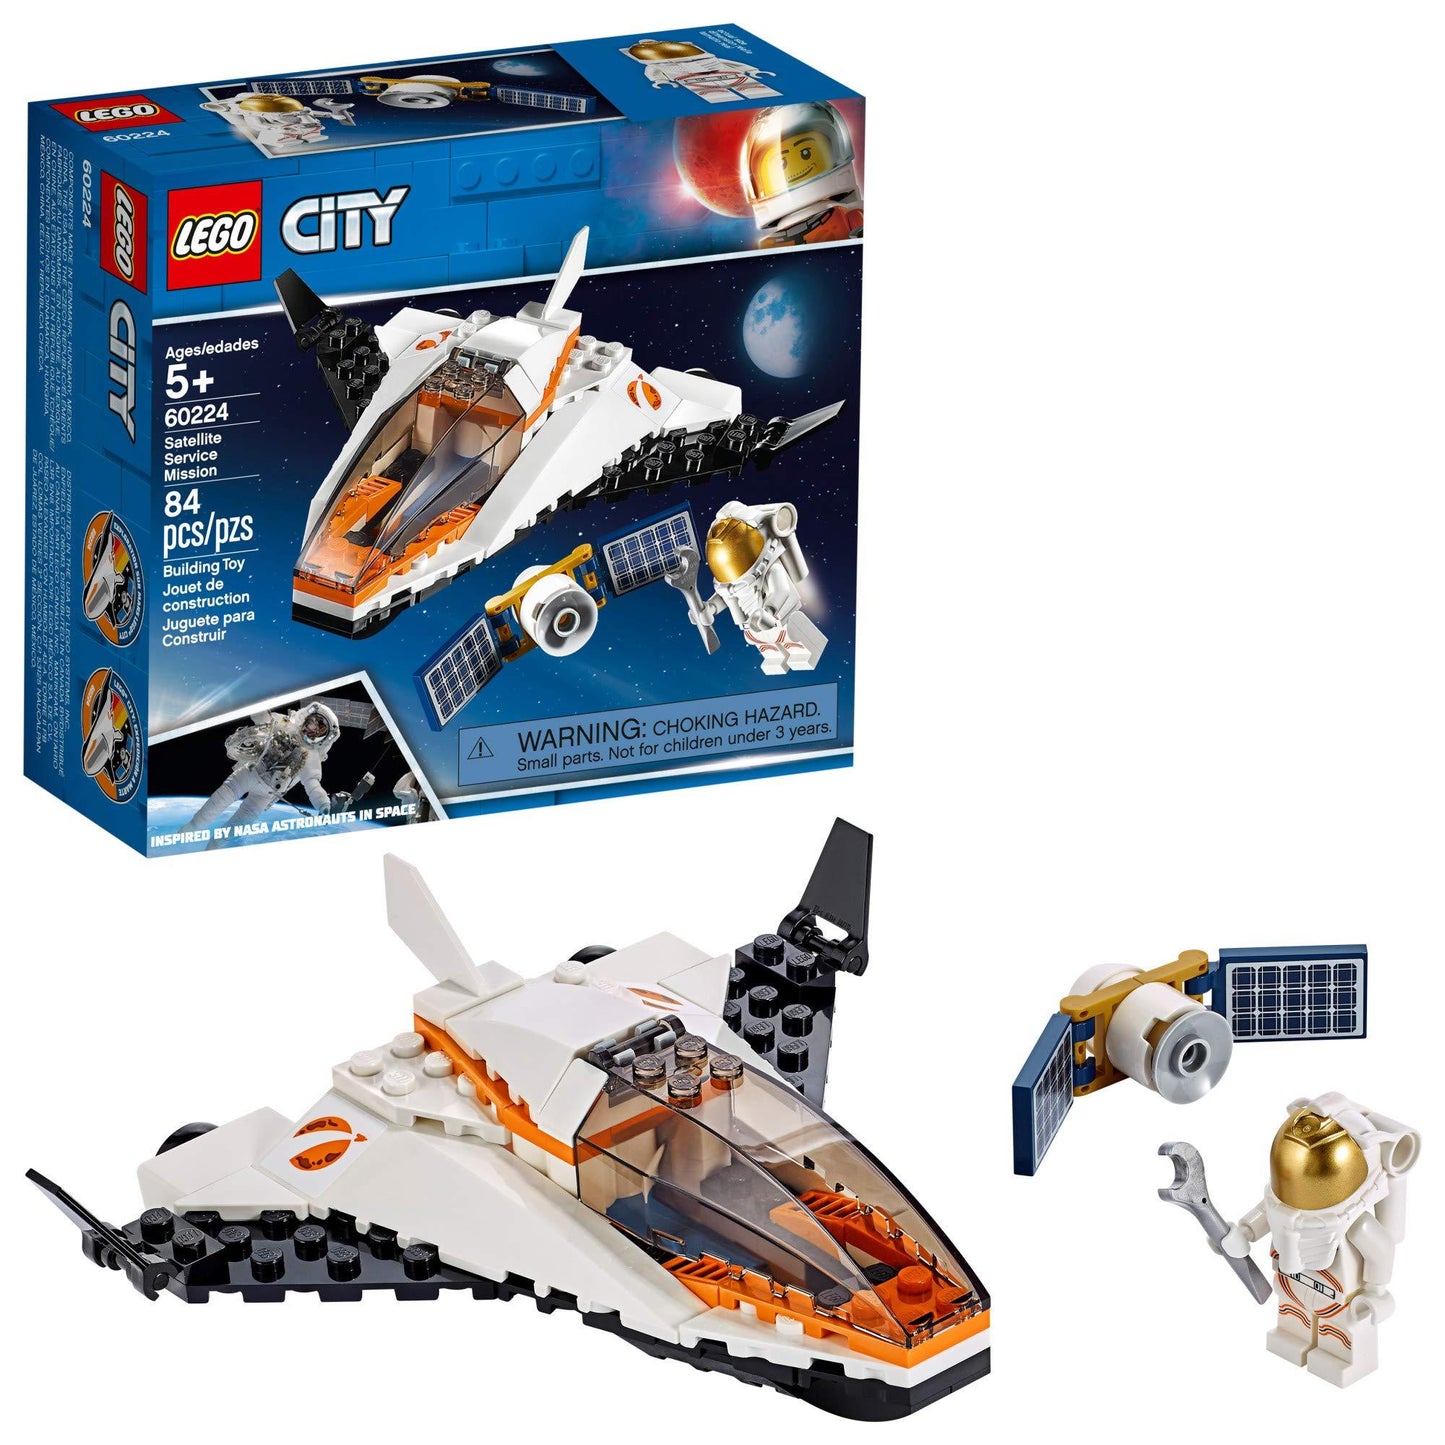 LEGO Ruimte Satelliet shuttle met astronaut 60224 City | 2TTOYS ✓ Official shop<br>